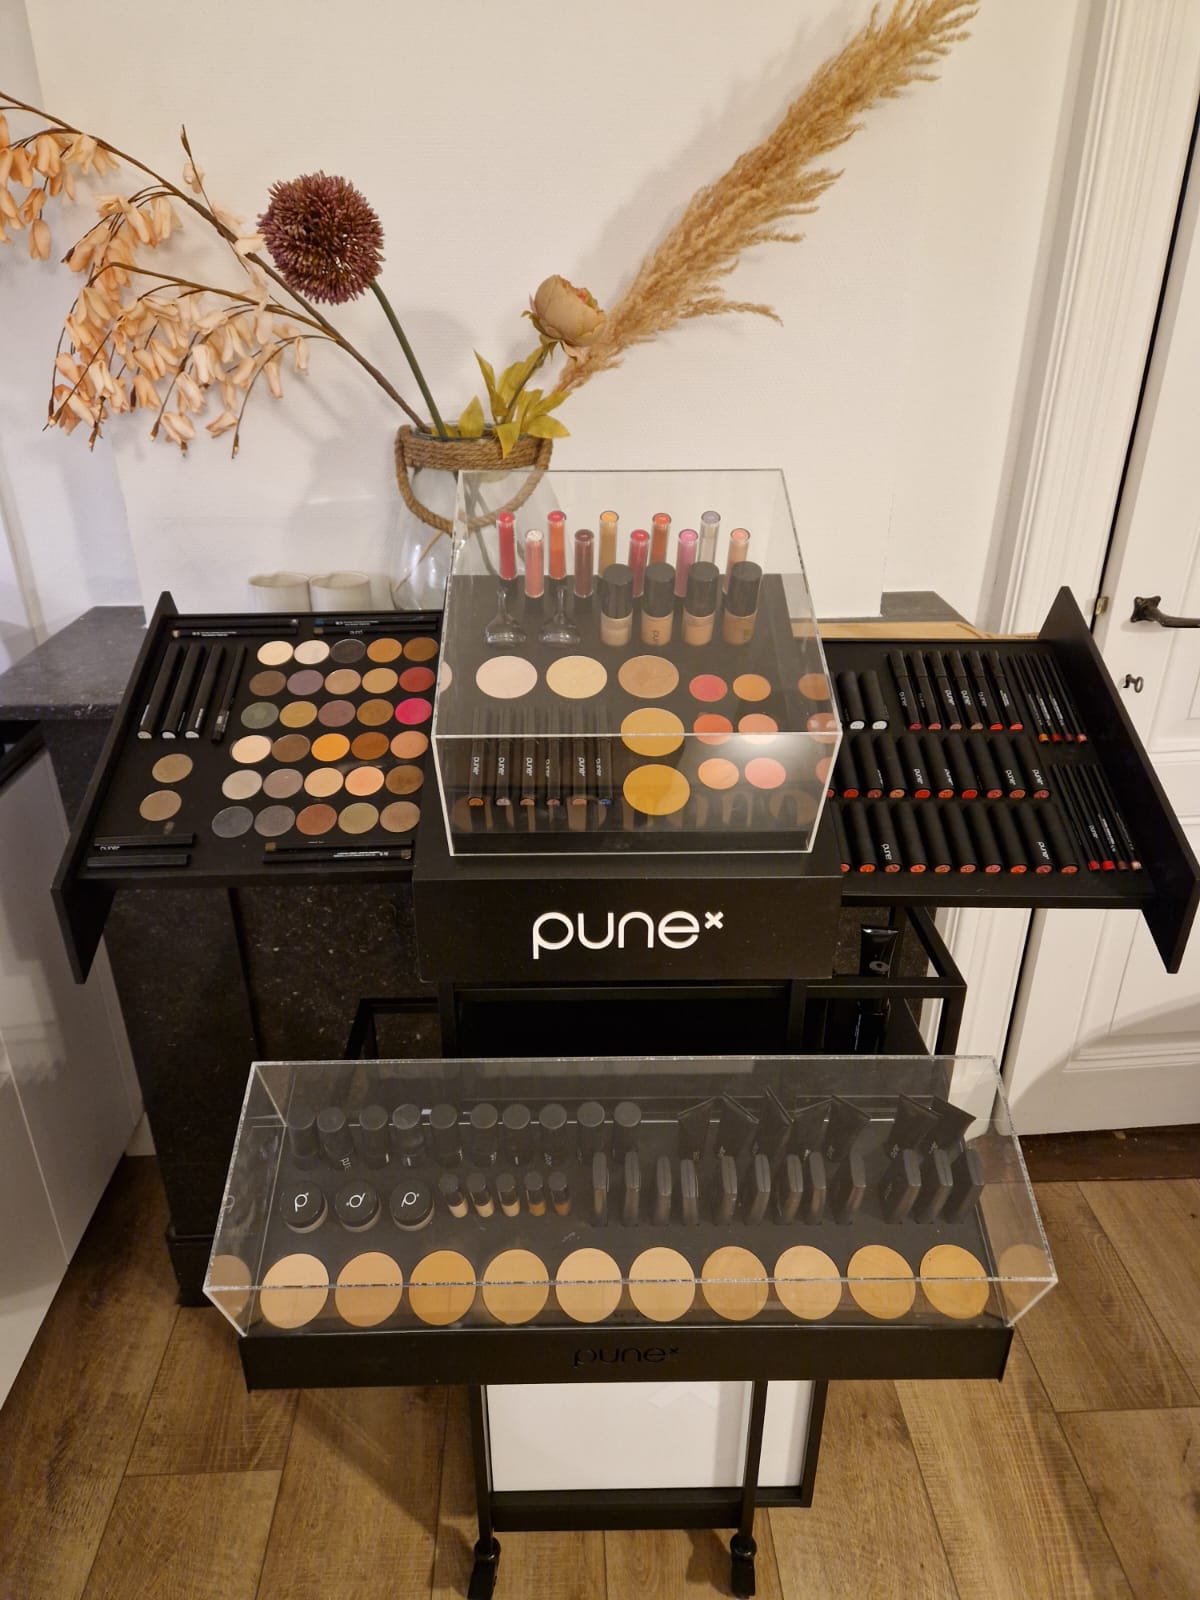 Pune make-up stand.JPG